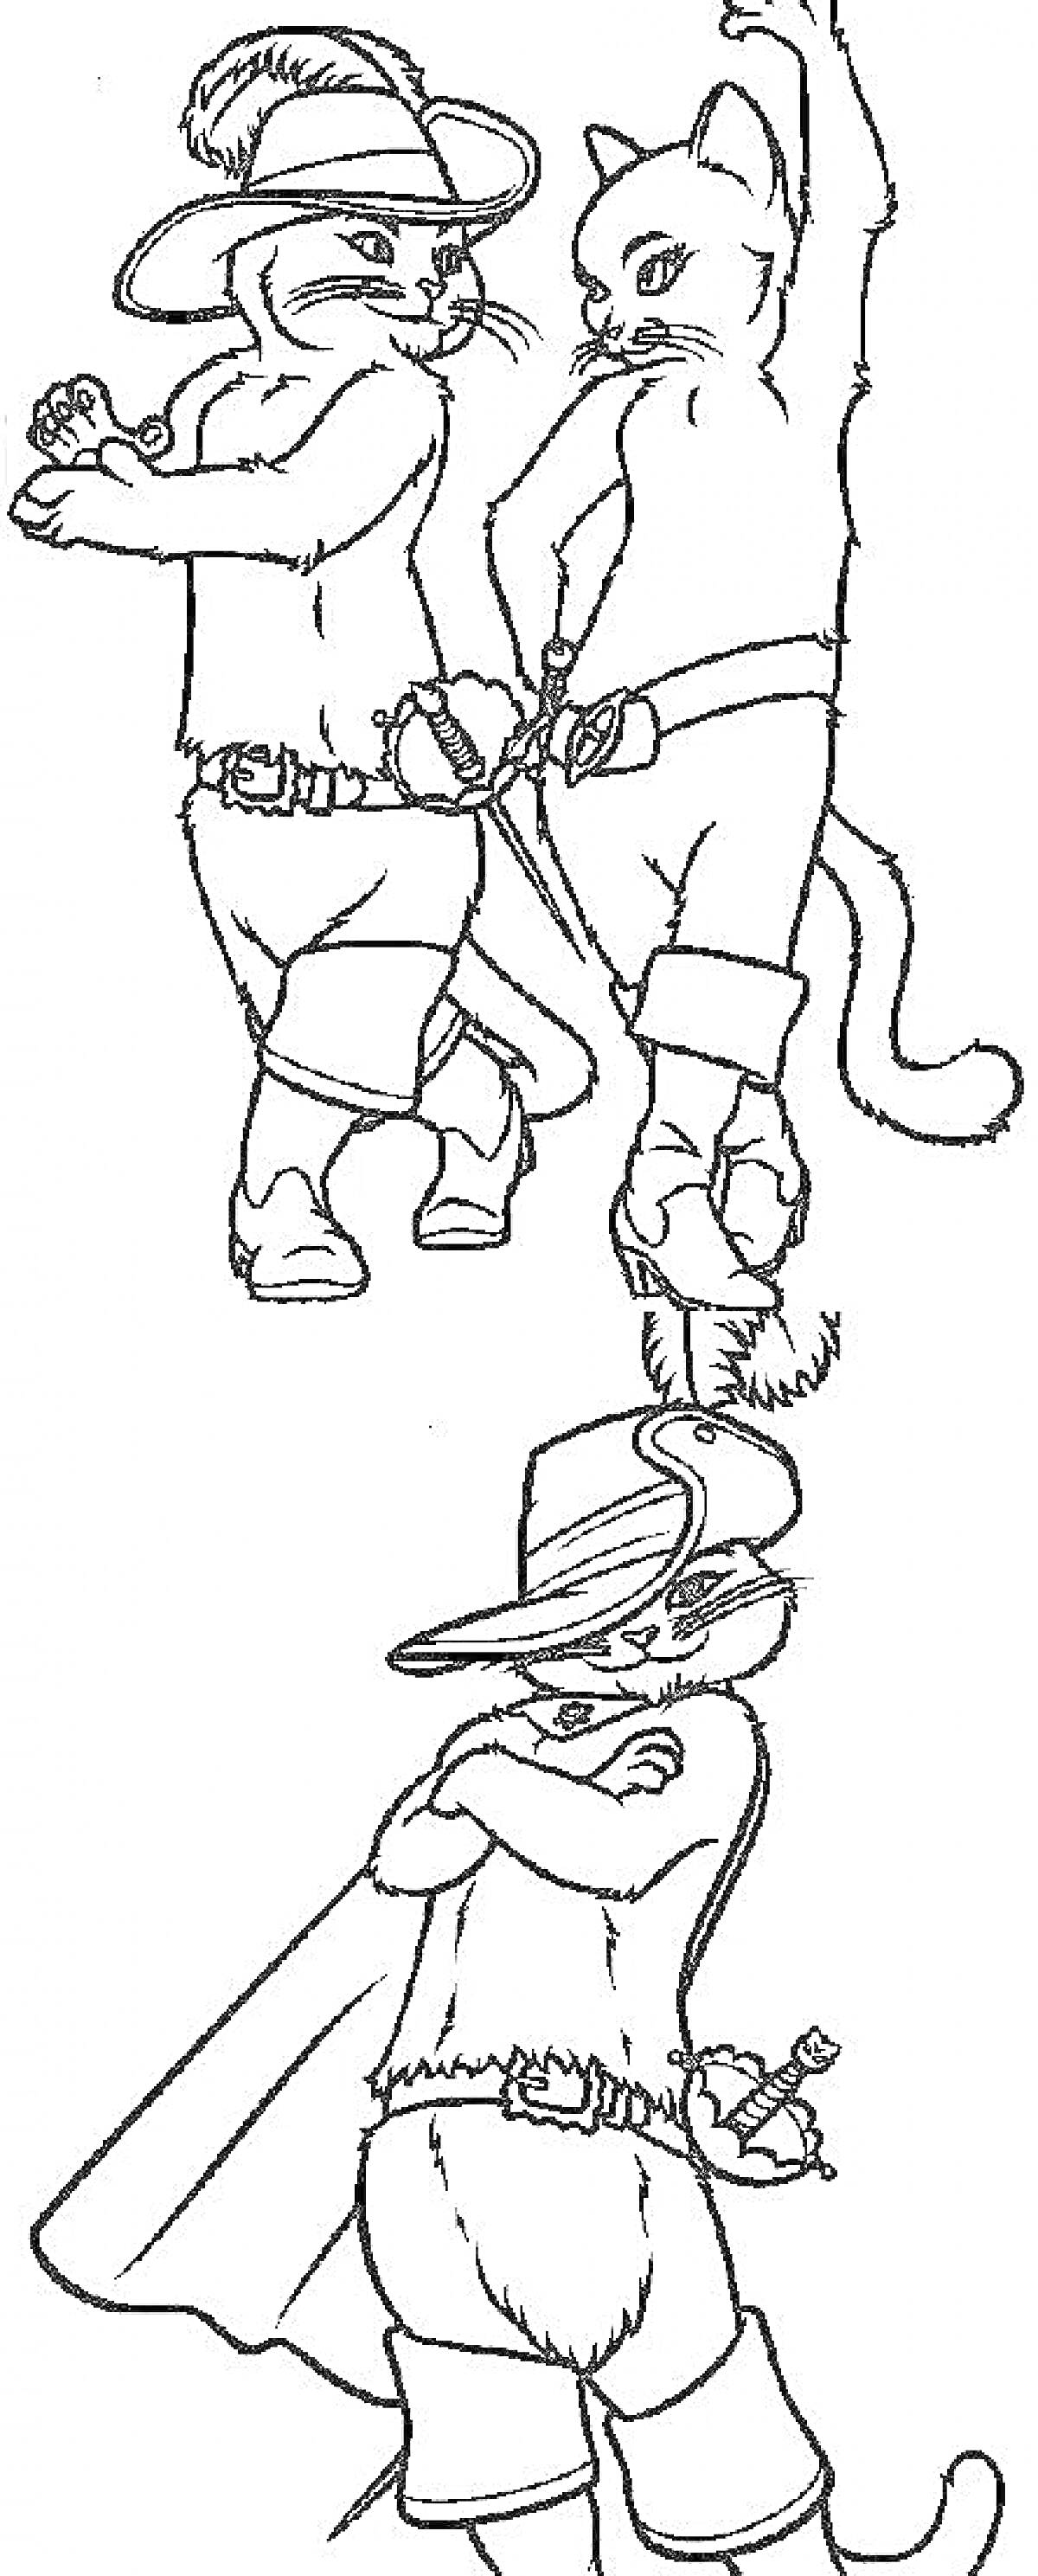 Два кота в шляпах и сапогах с кинжалами, танцуют и позируют